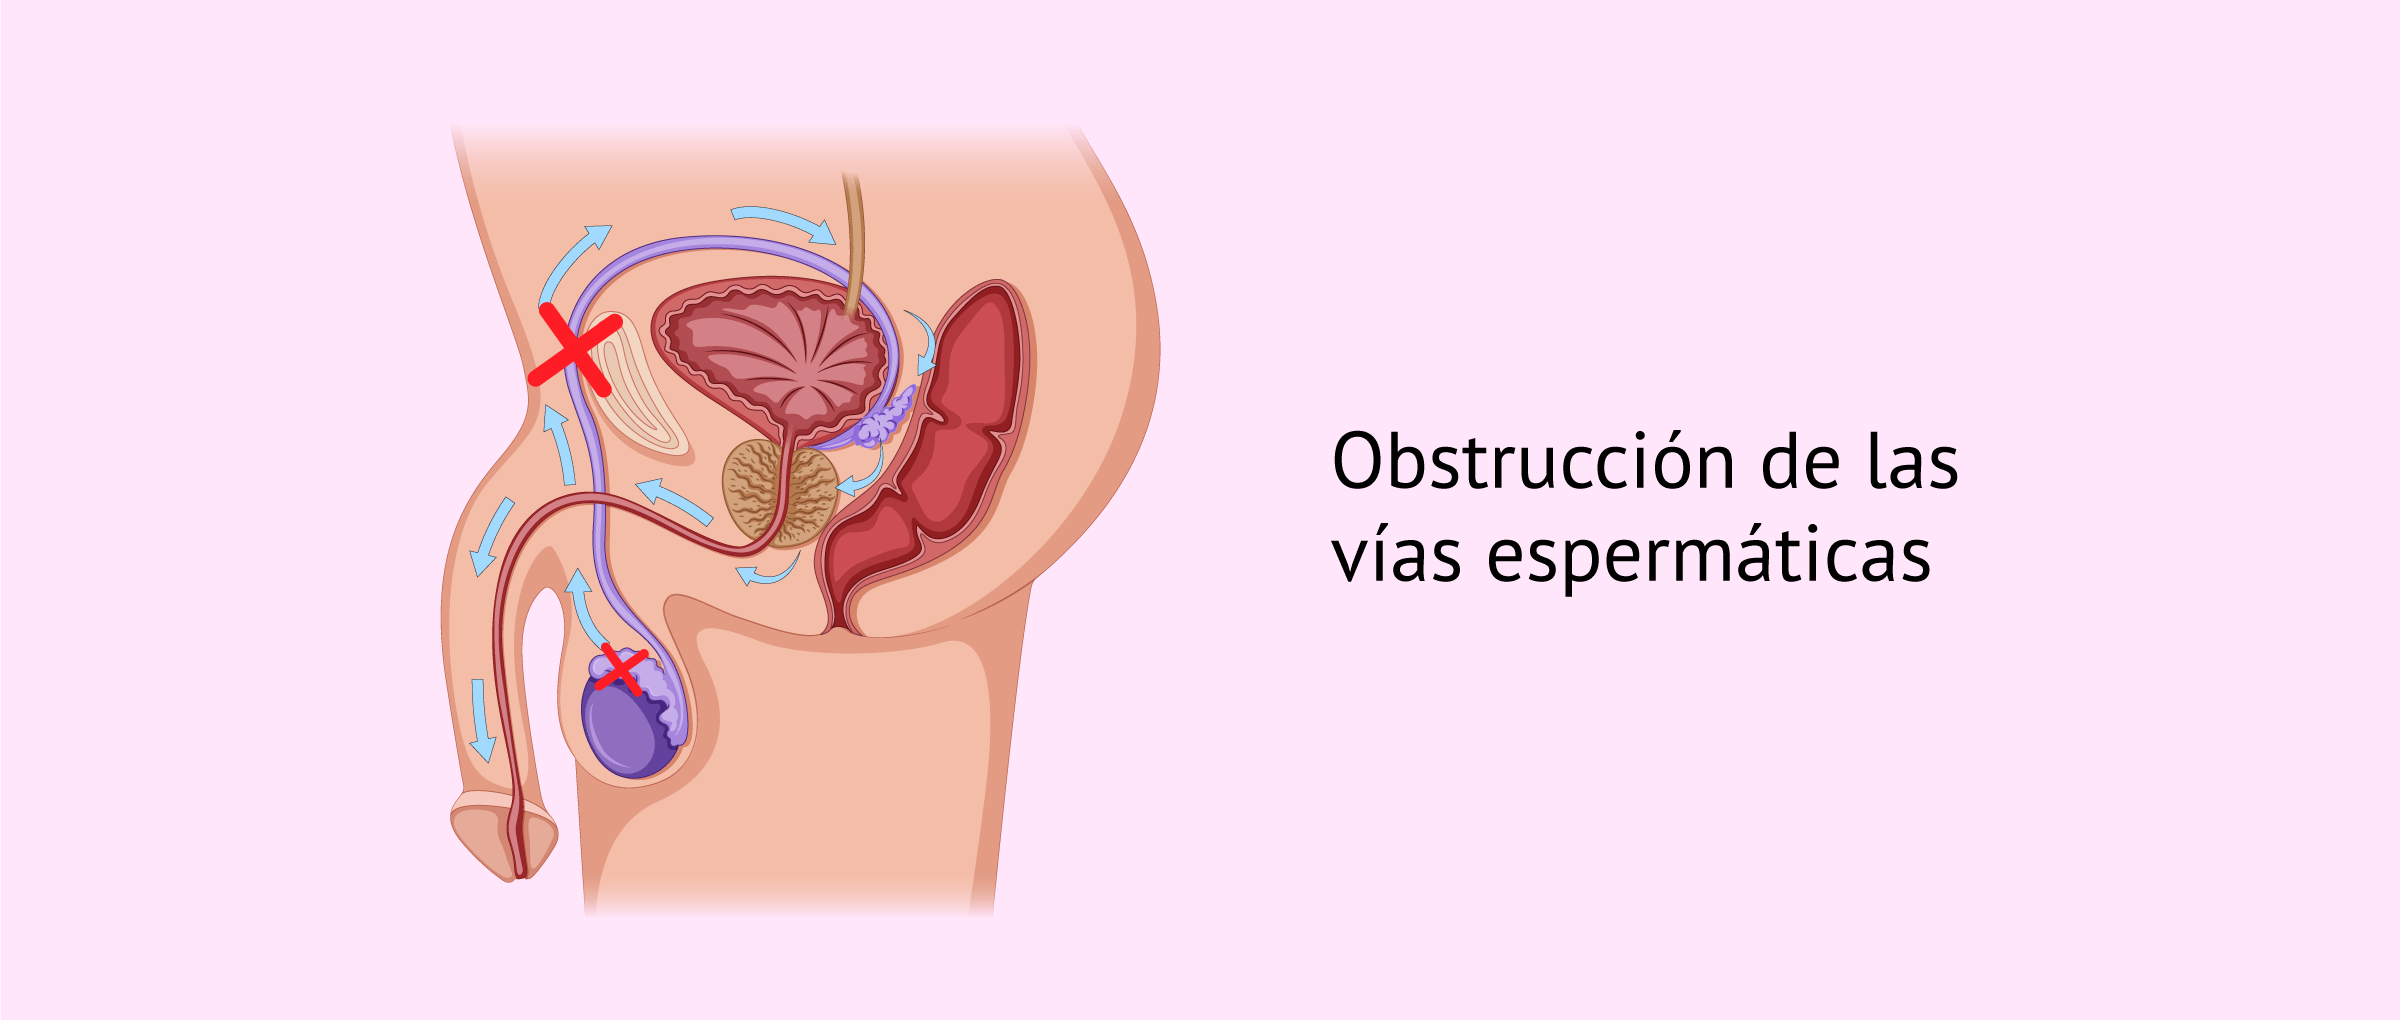 Obstrucción del epidídimo, los conductos deferentes y la uretra